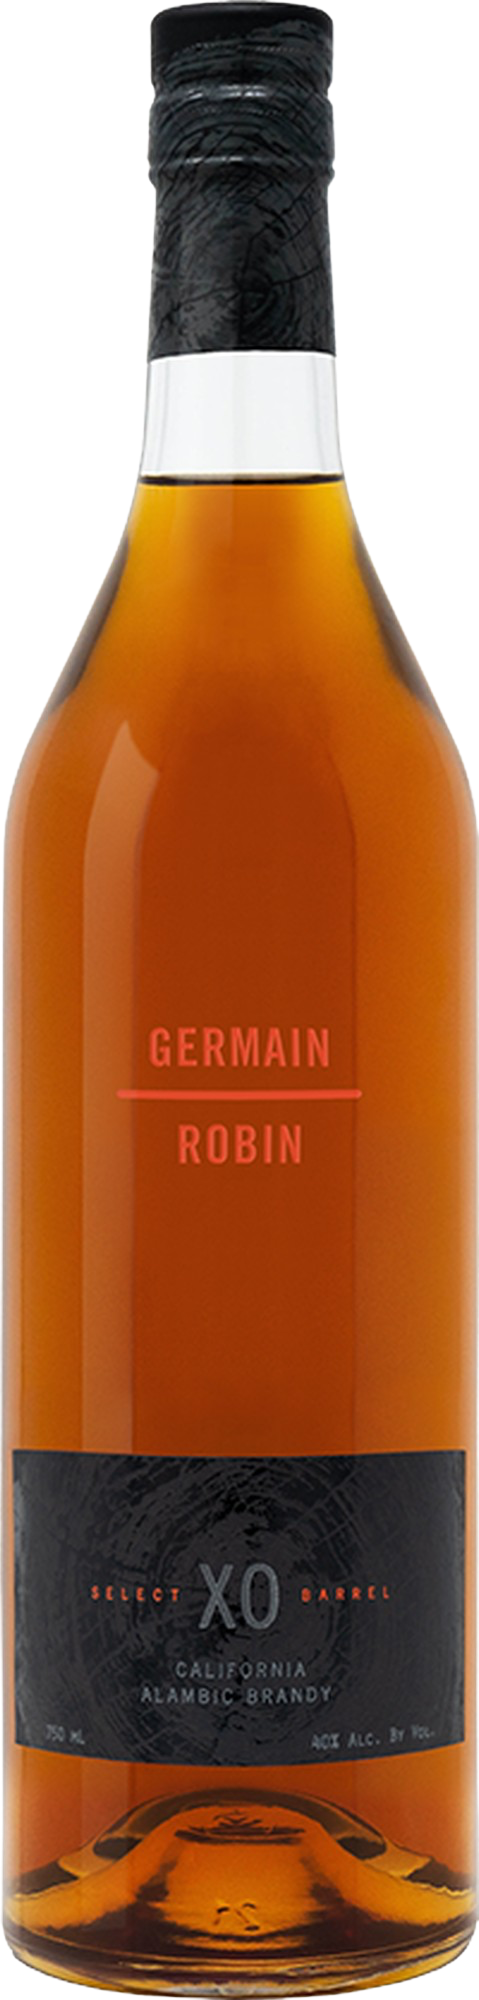 Germain-Robin XO Brandy